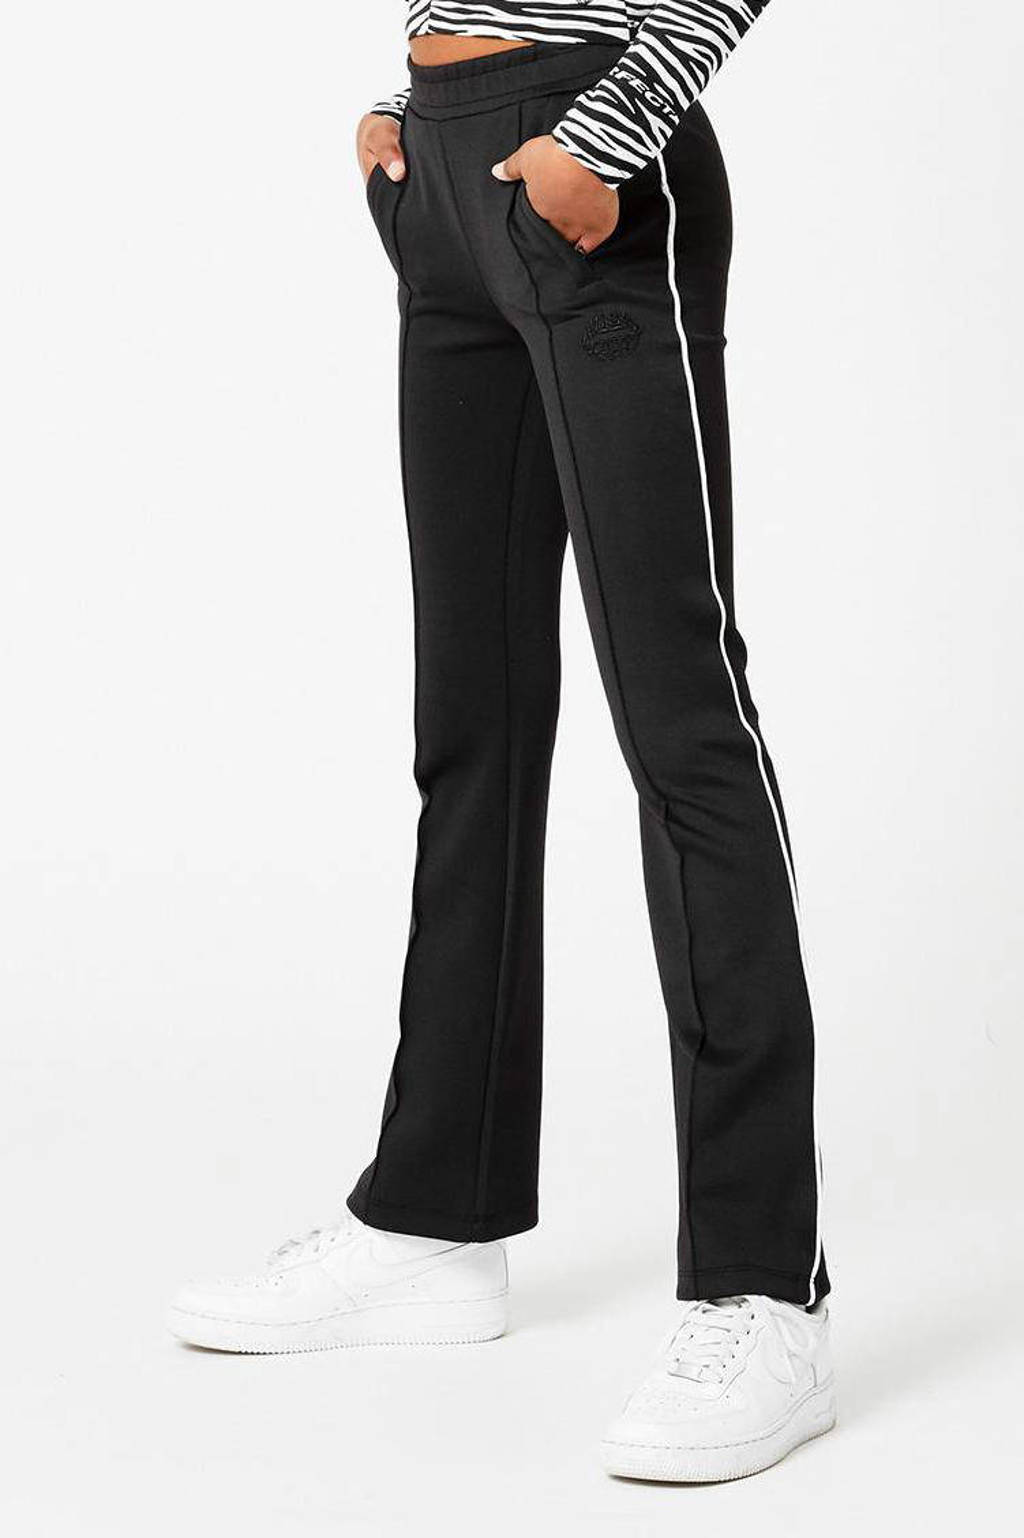 Zwart en witte meisjes CoolCat Junior flared joggingbroek Cady van polyester met regular waist en elastische tailleband